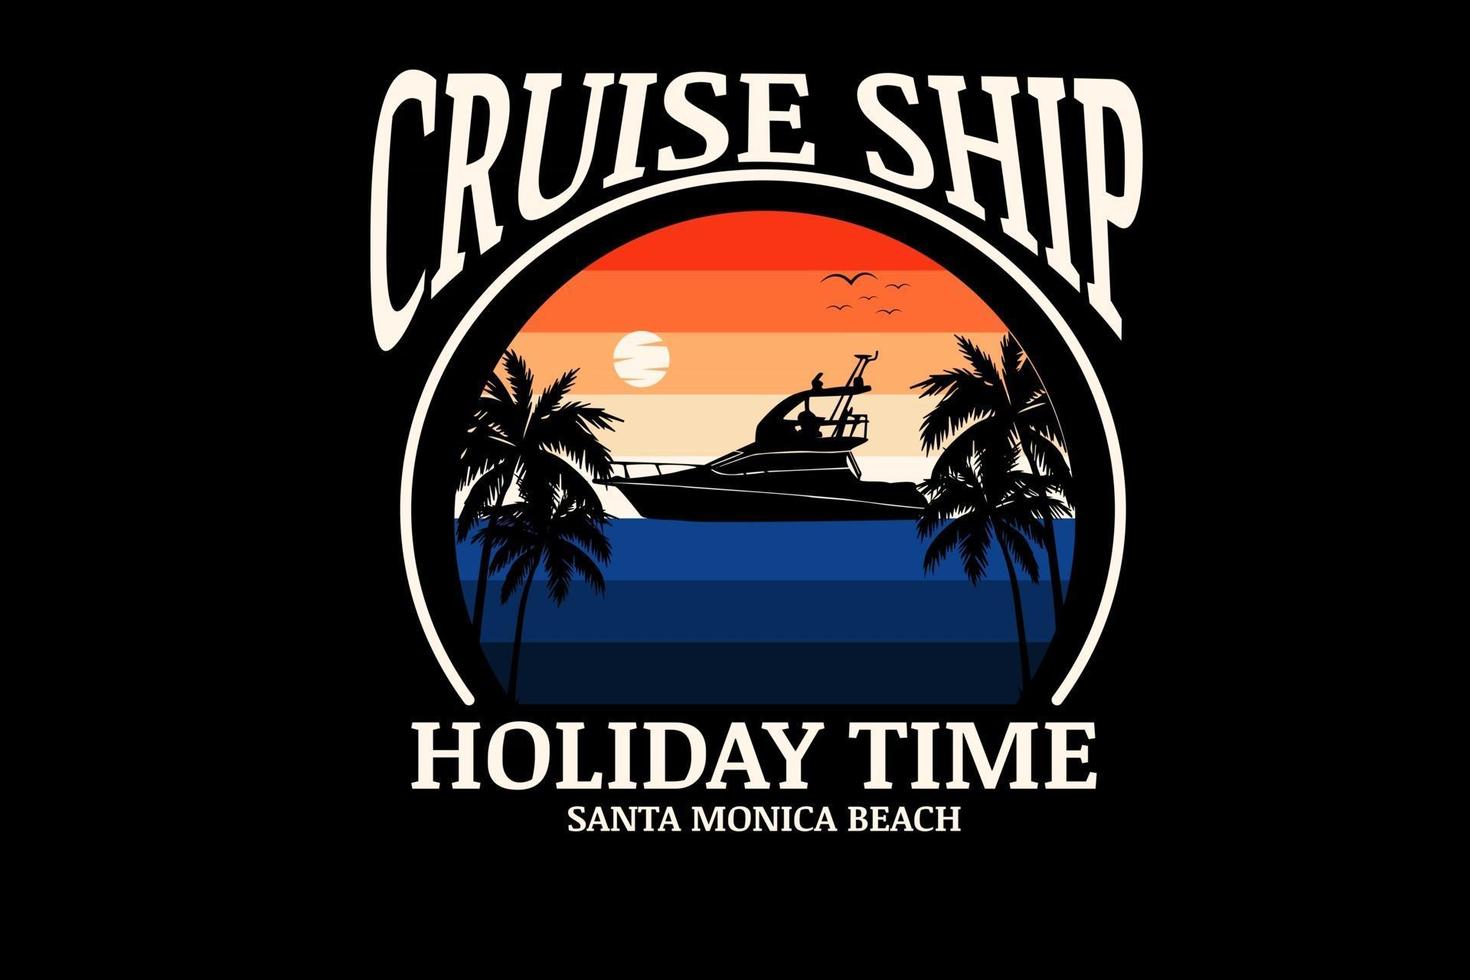 cruiseschip vakantietijd kleur oranje en blauw vector